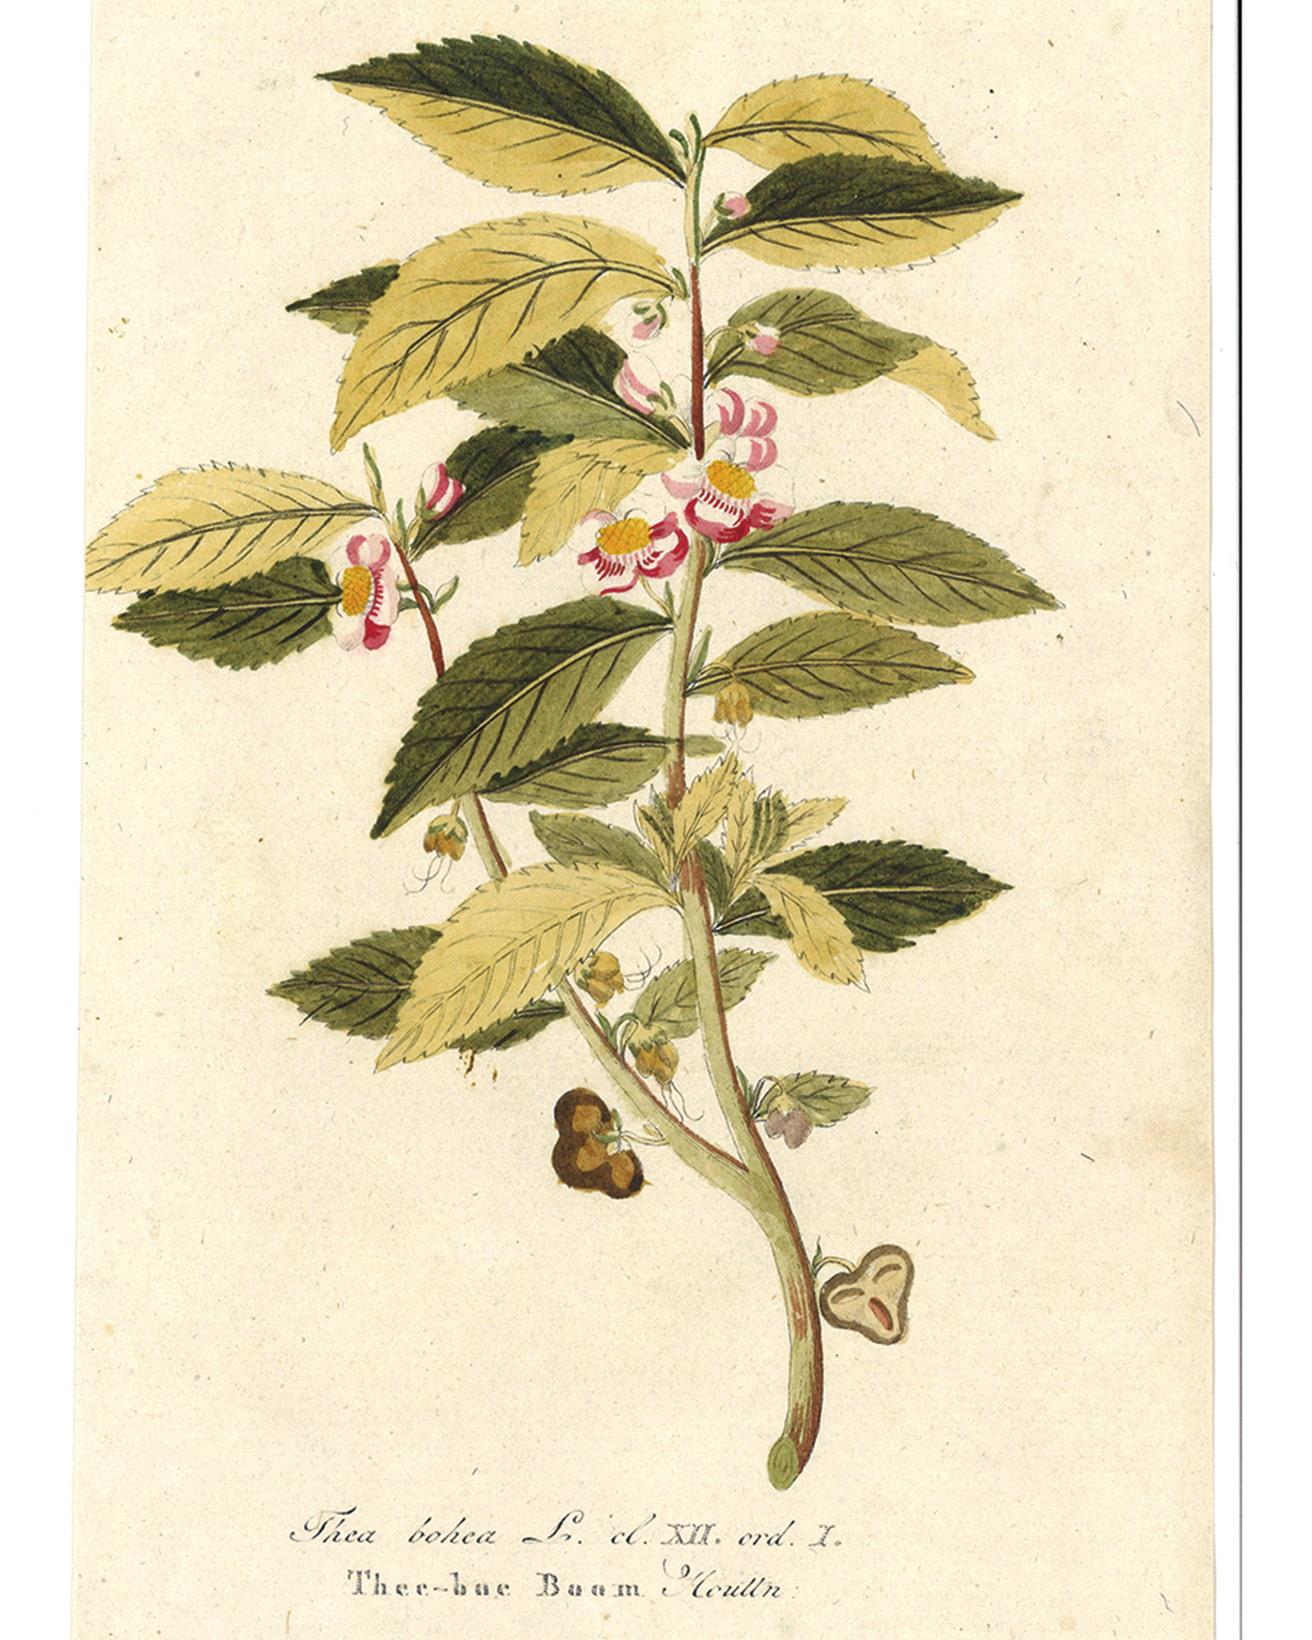 作者不明《チャの木》1800年　Photo Brain Trust inc.　漢方薬の基礎を築いたとされる人物・神農が植物の毒に当たった際に解毒剤として使用したのが茶の葉。長年、「万病に効く東洋の神秘薬」として飲まれていた茶を嗜好品の飲み物として普及したのは、ポルトガルの王家からイギリス王チャールズ2世に嫁いだキャサリン・オブ・ブラガンザと言われている。1662年のお輿入れの際、貴重な茶葉や高価な砂糖、陶磁器の茶道具一式を持参。彼女のサロンでは砂糖入りの茶が振る舞われ、この贅沢な飲み方が上流階級の間で広まっていった。